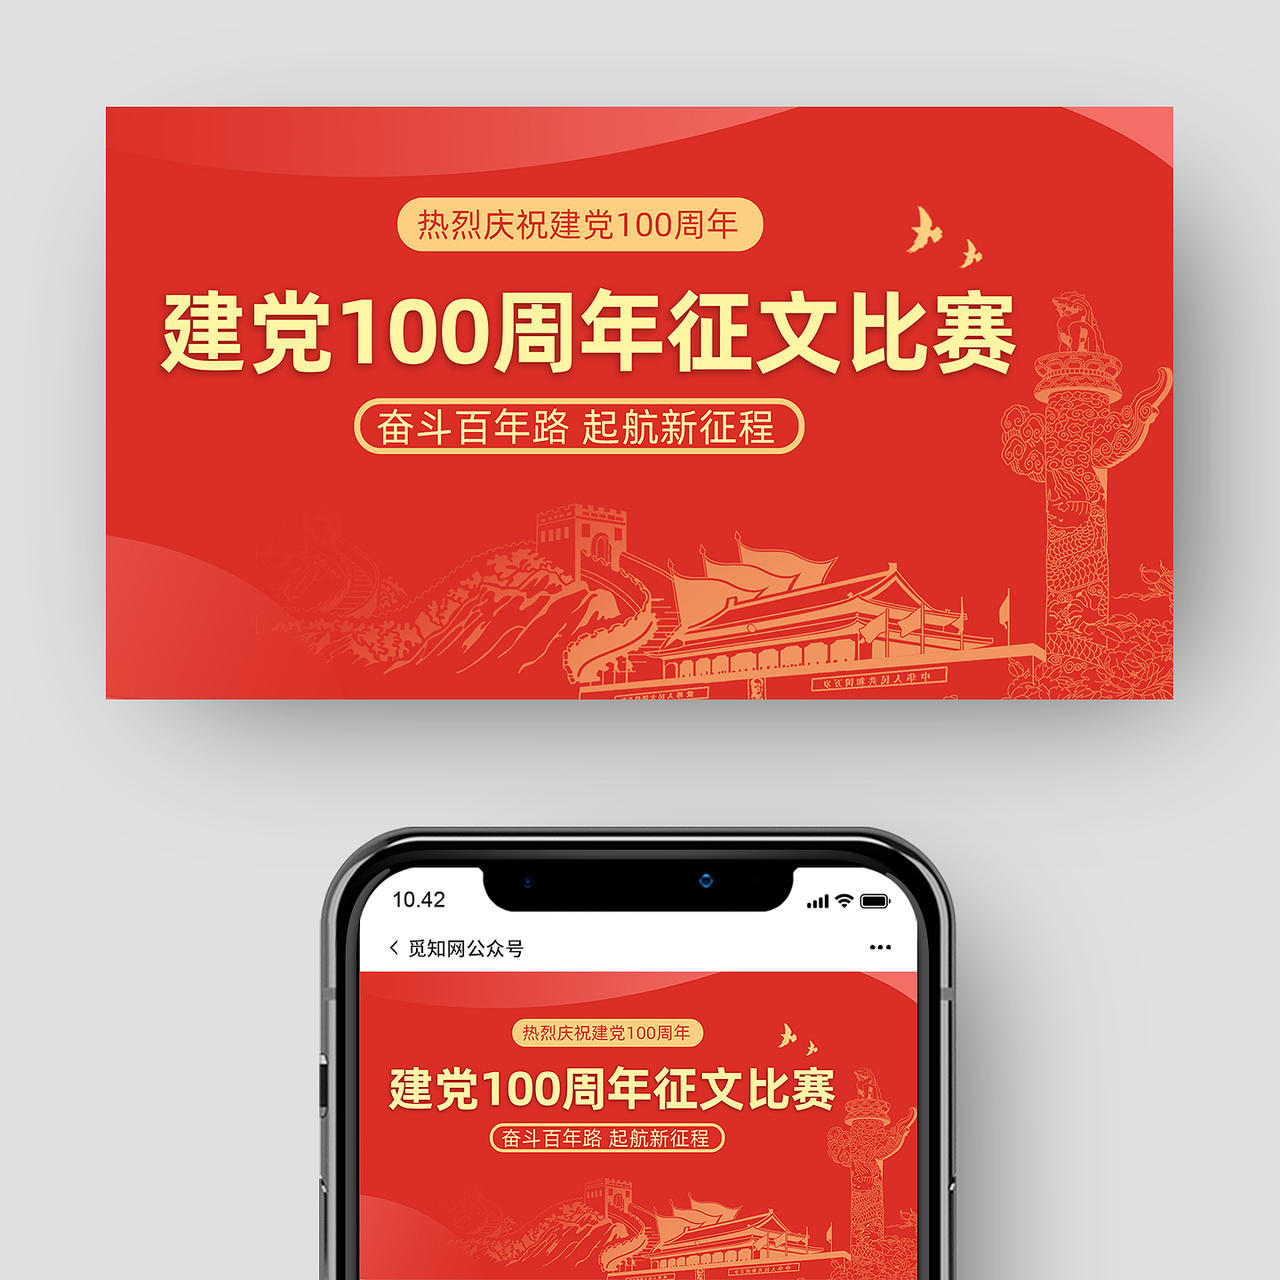 红色线条建党一百周年征文比赛建党100周年公众号封面